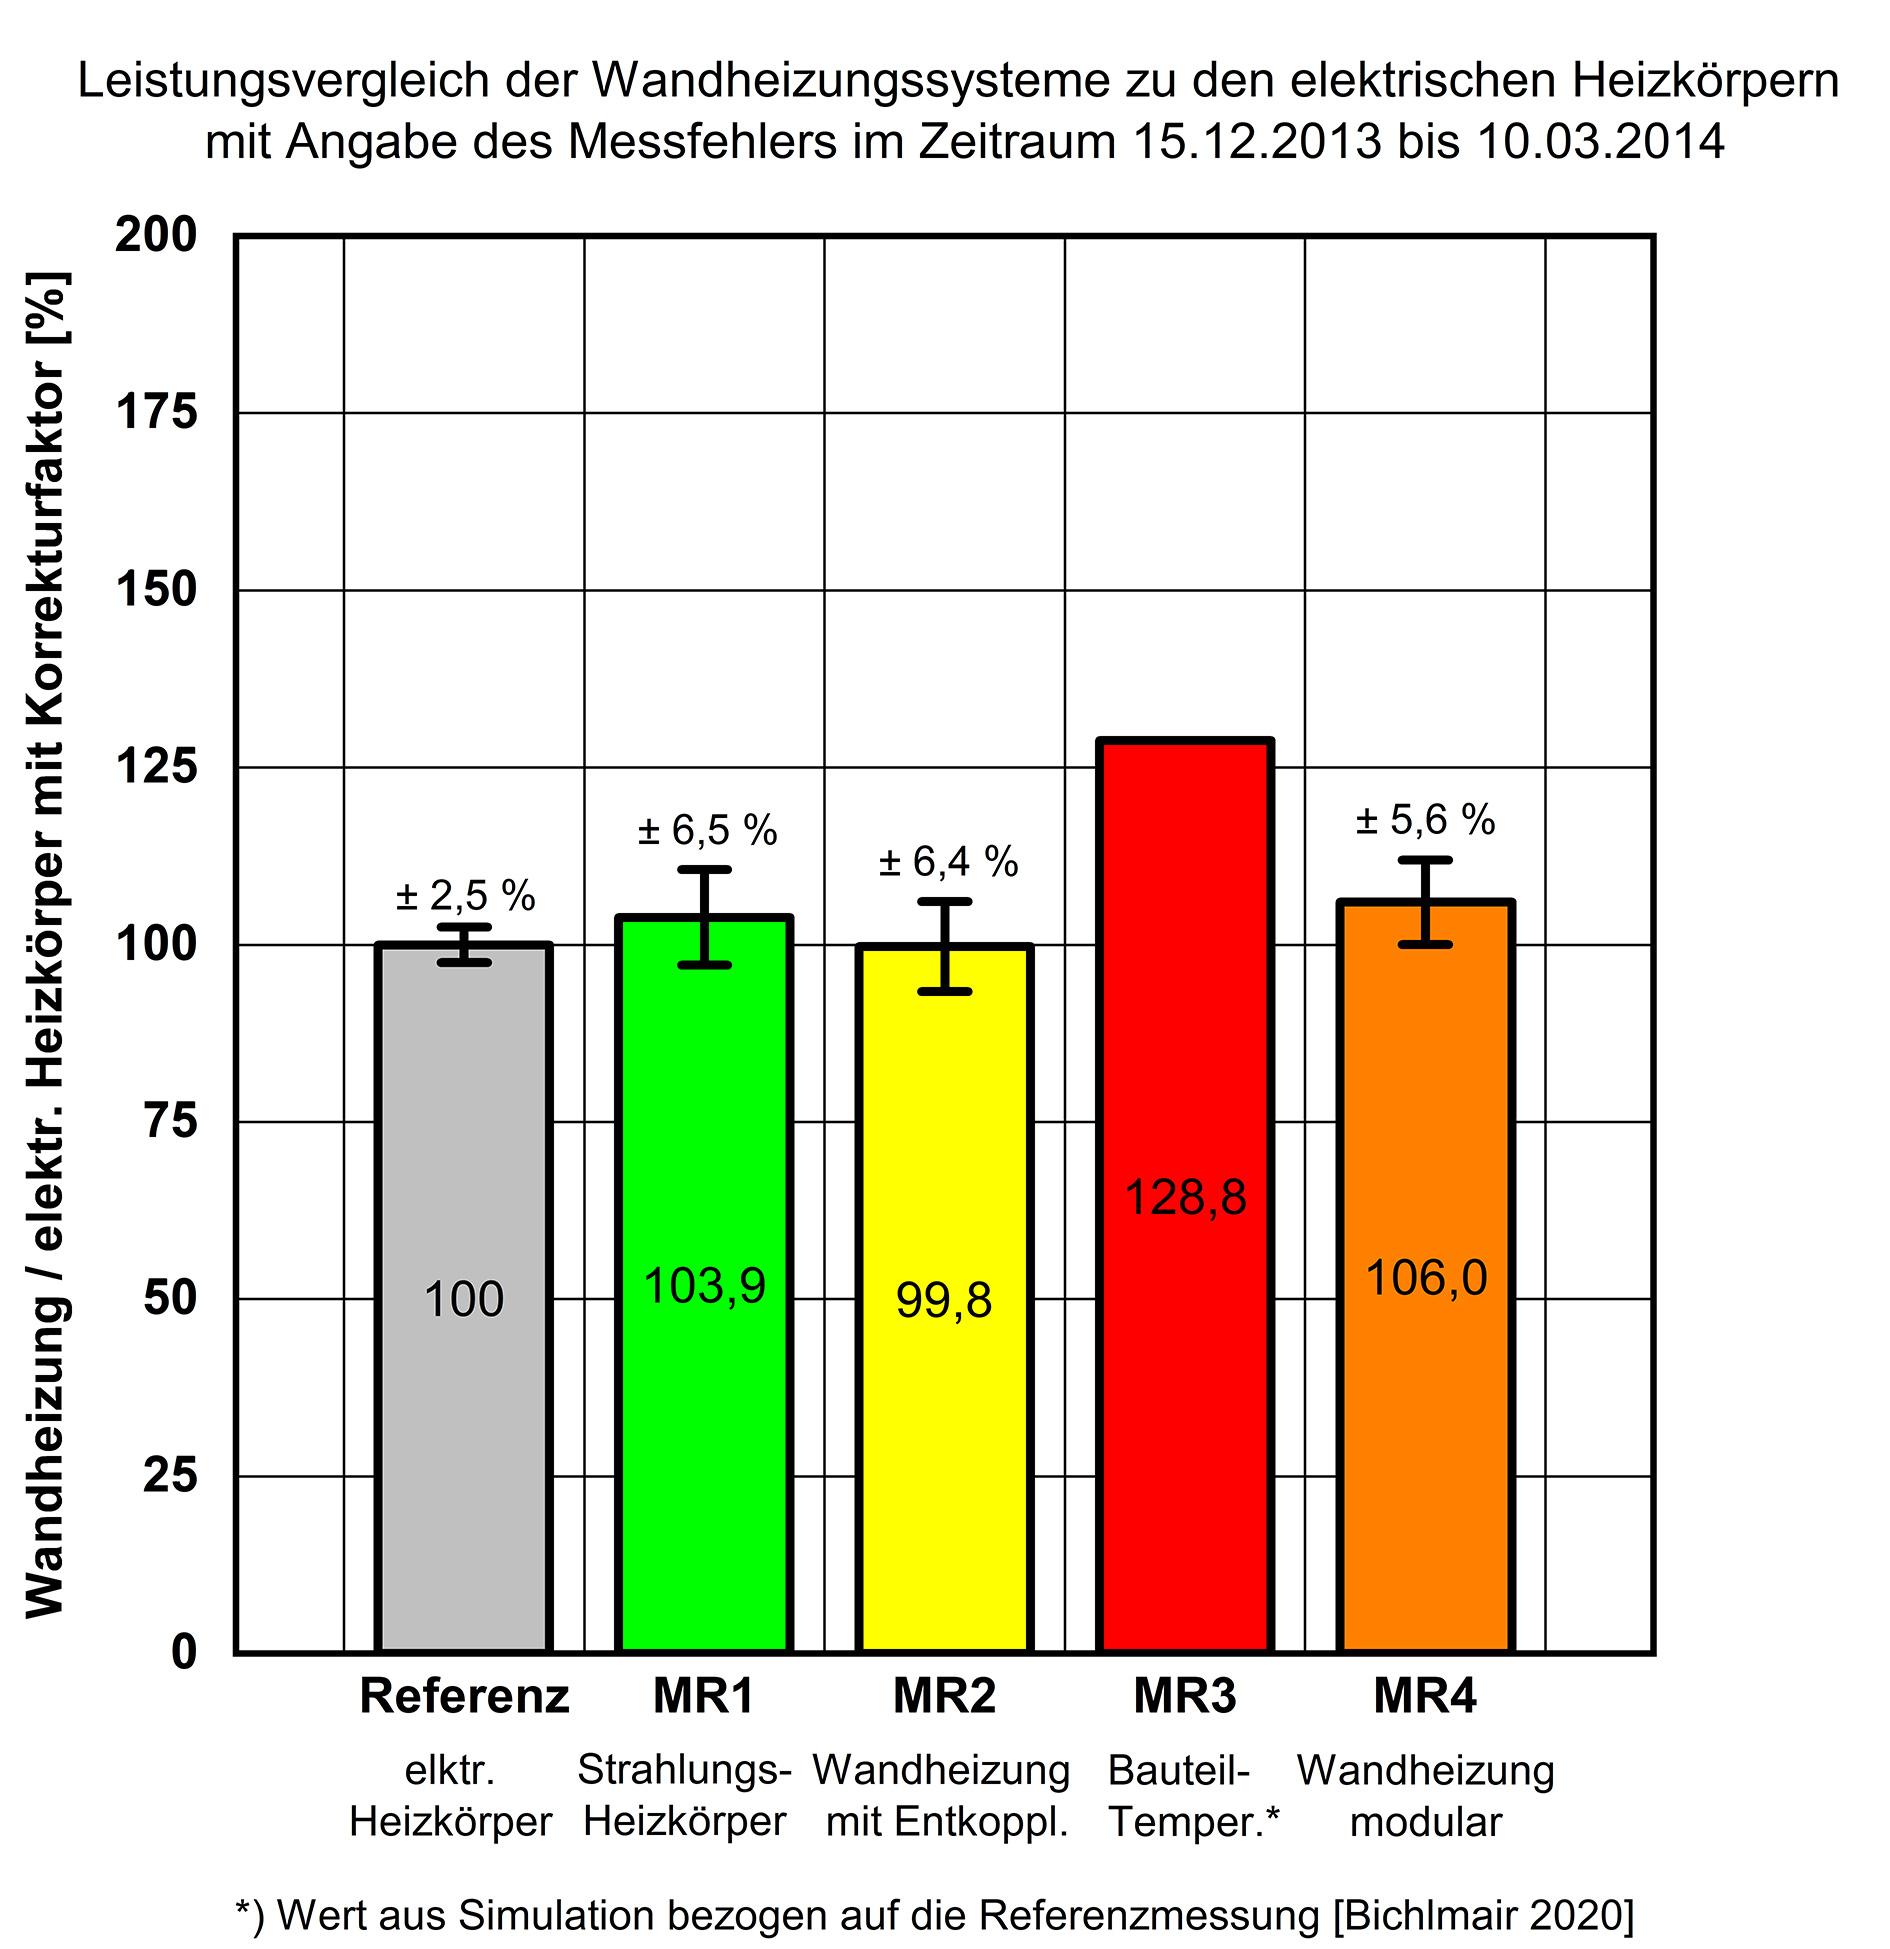 Leistungsvergleich der Wandheizungssysteme im Zeitraum 15.12.2013 bis 10.03.2014